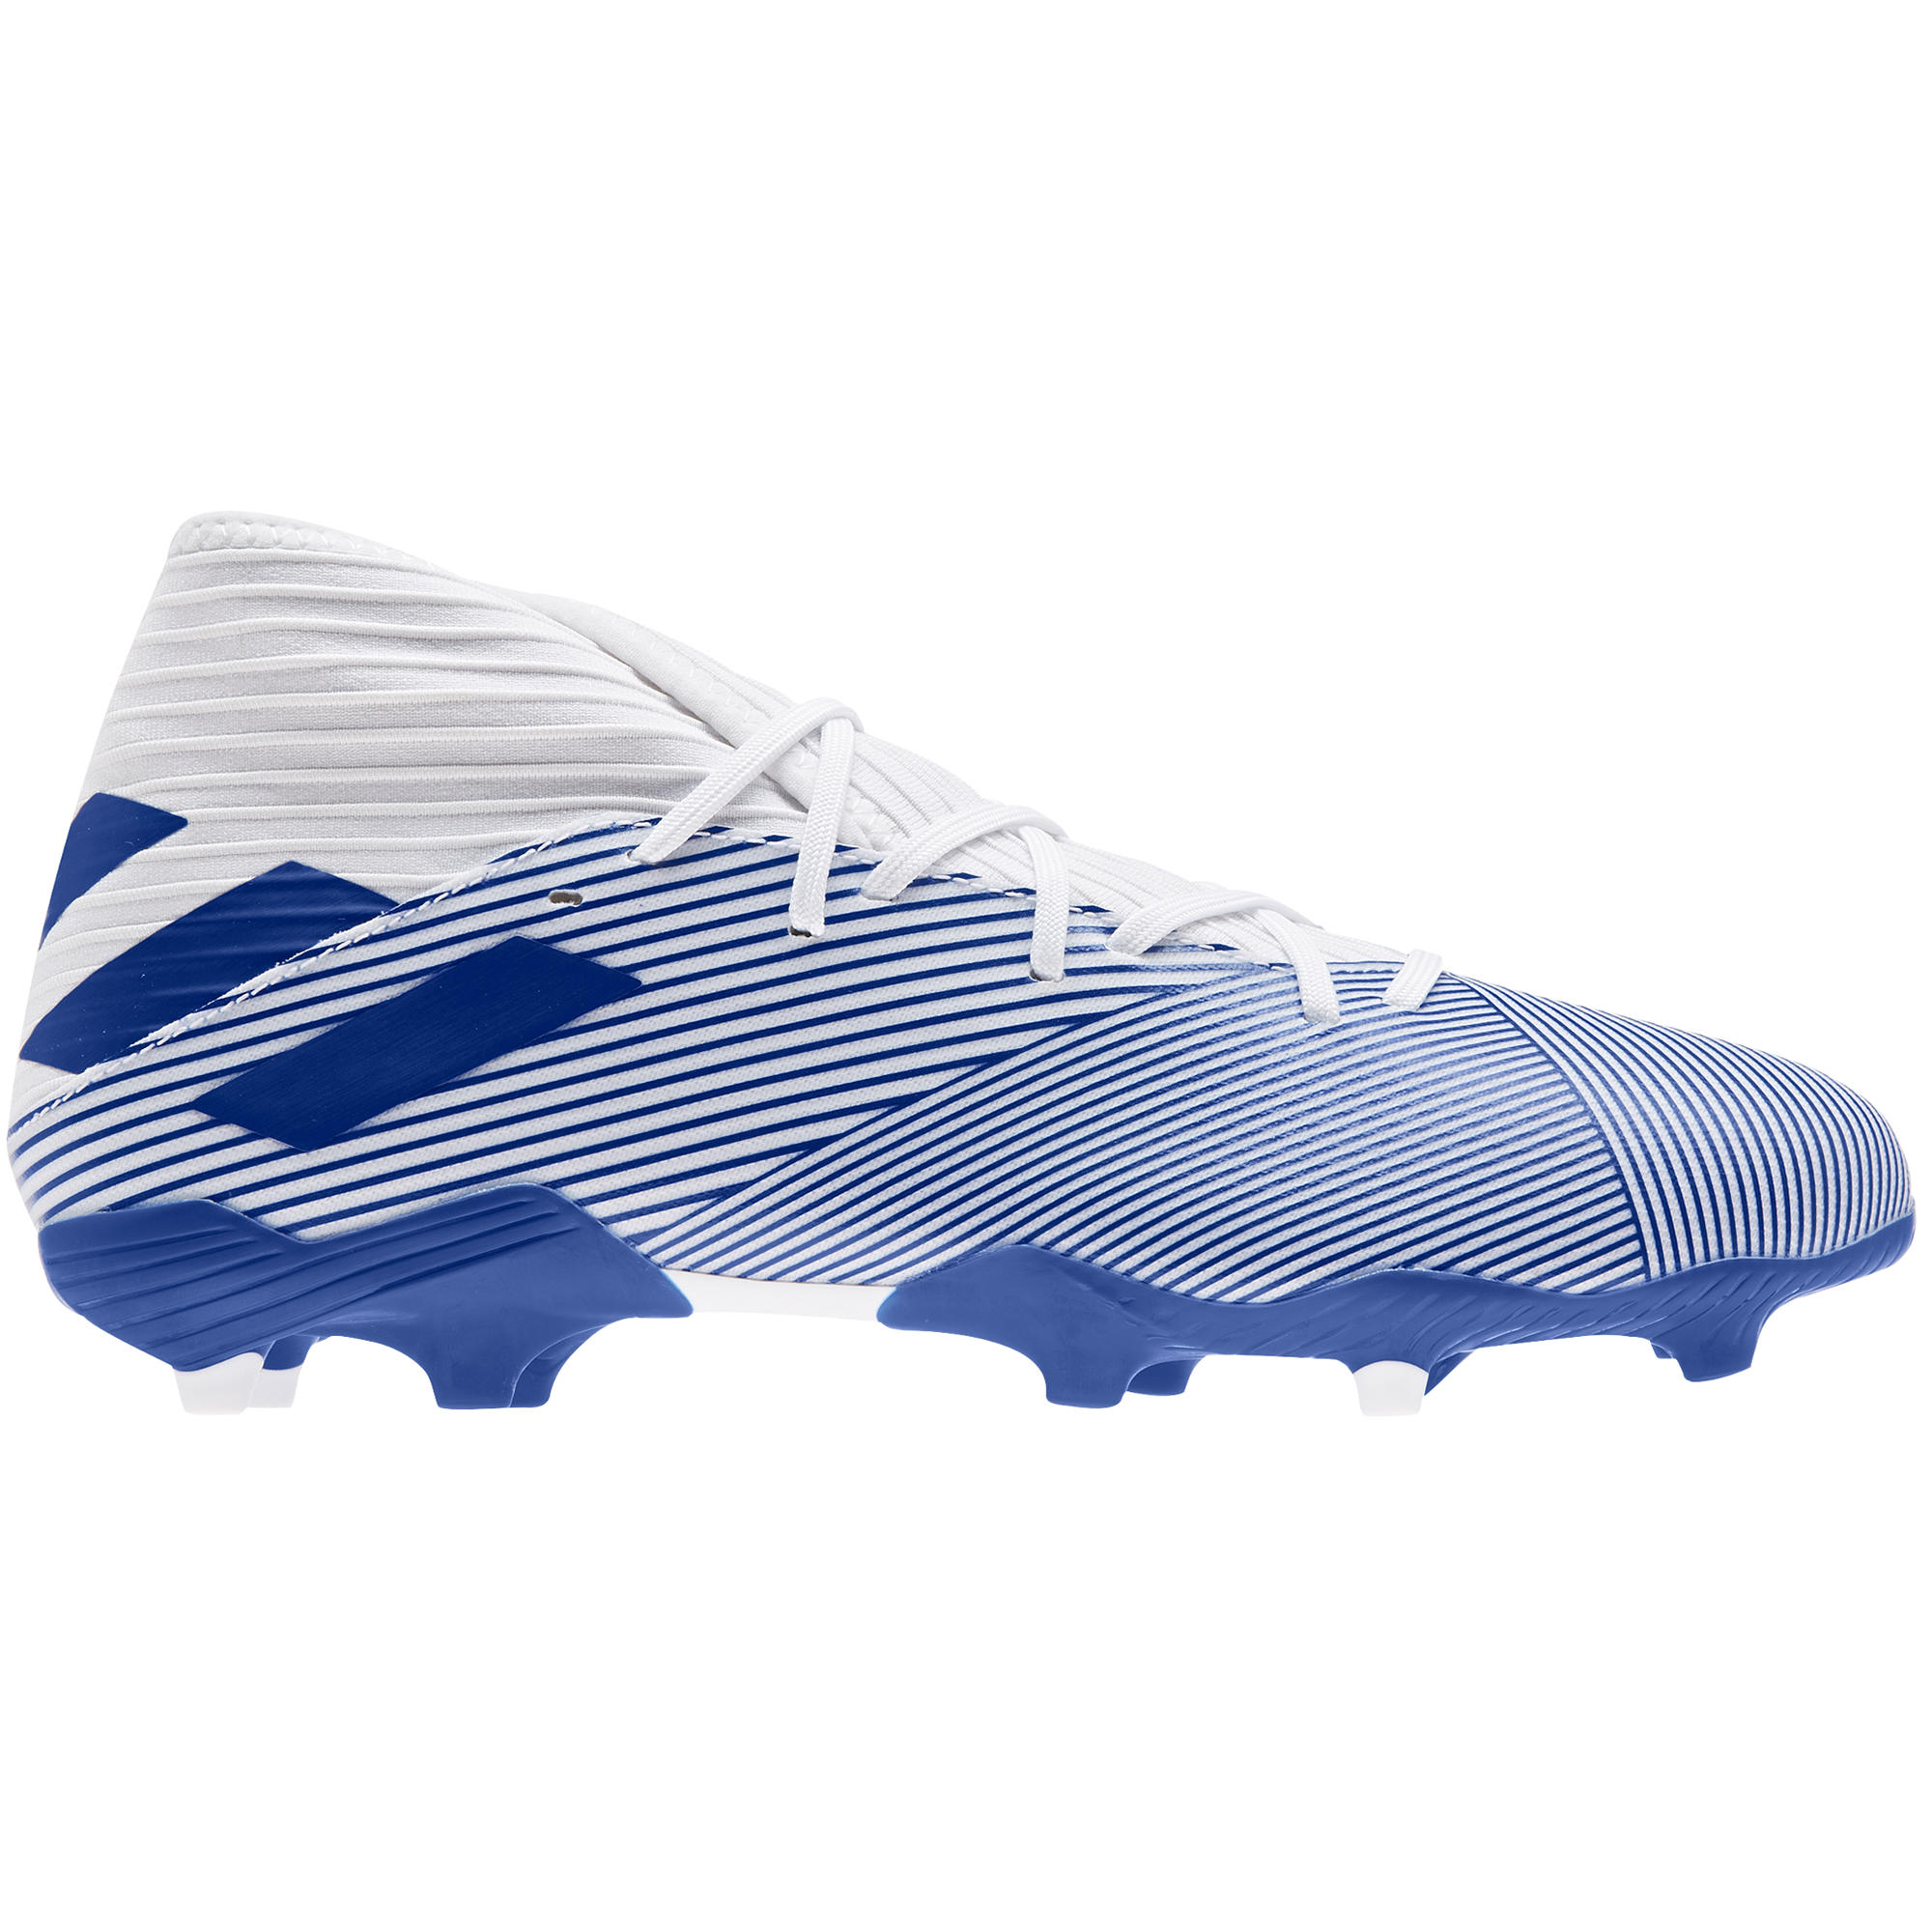 blue nemeziz football boots